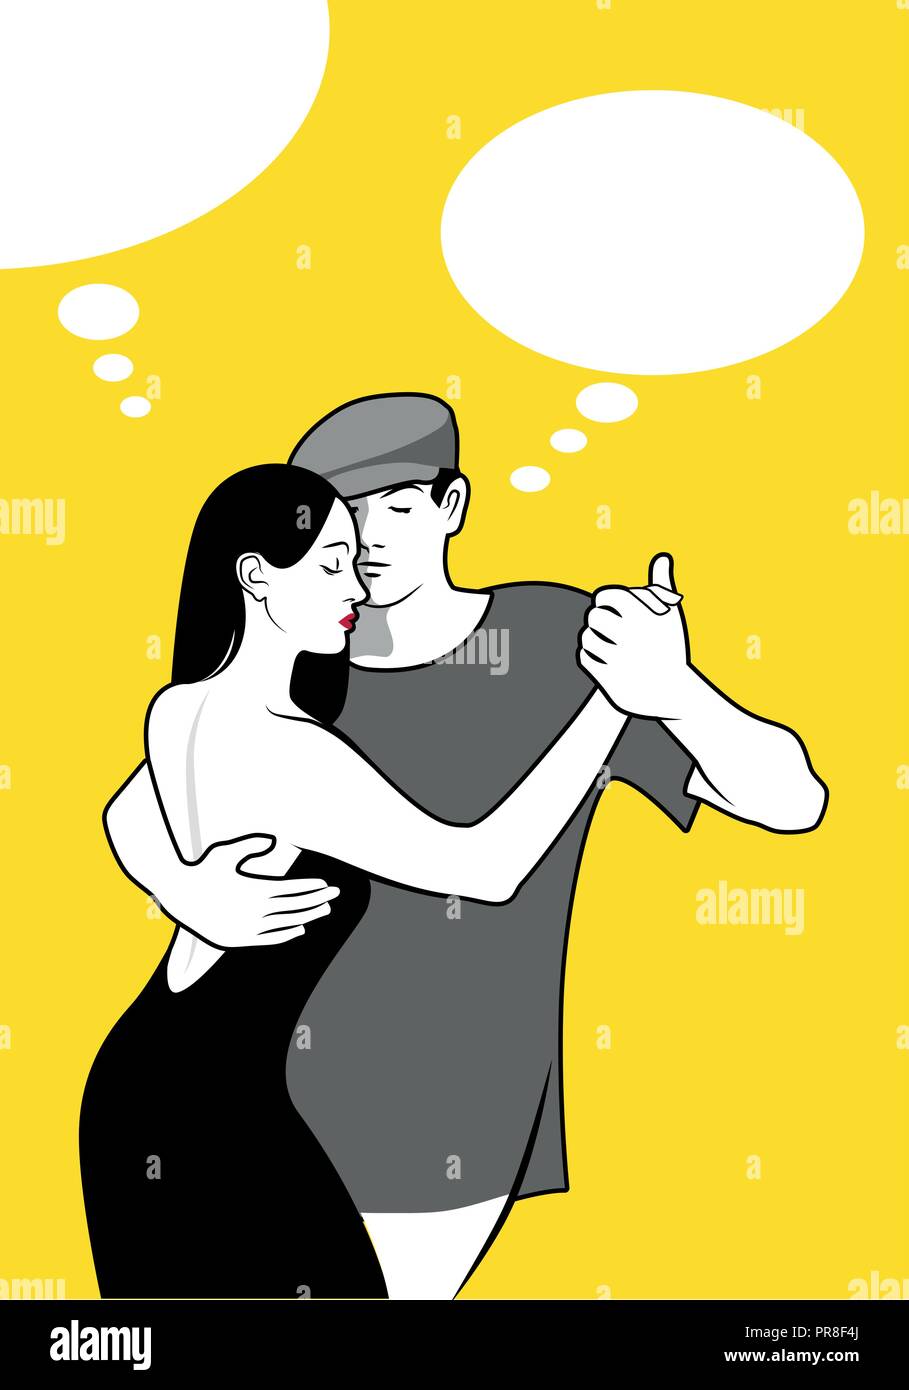 Young couple dancing tango Illustration de Vecteur